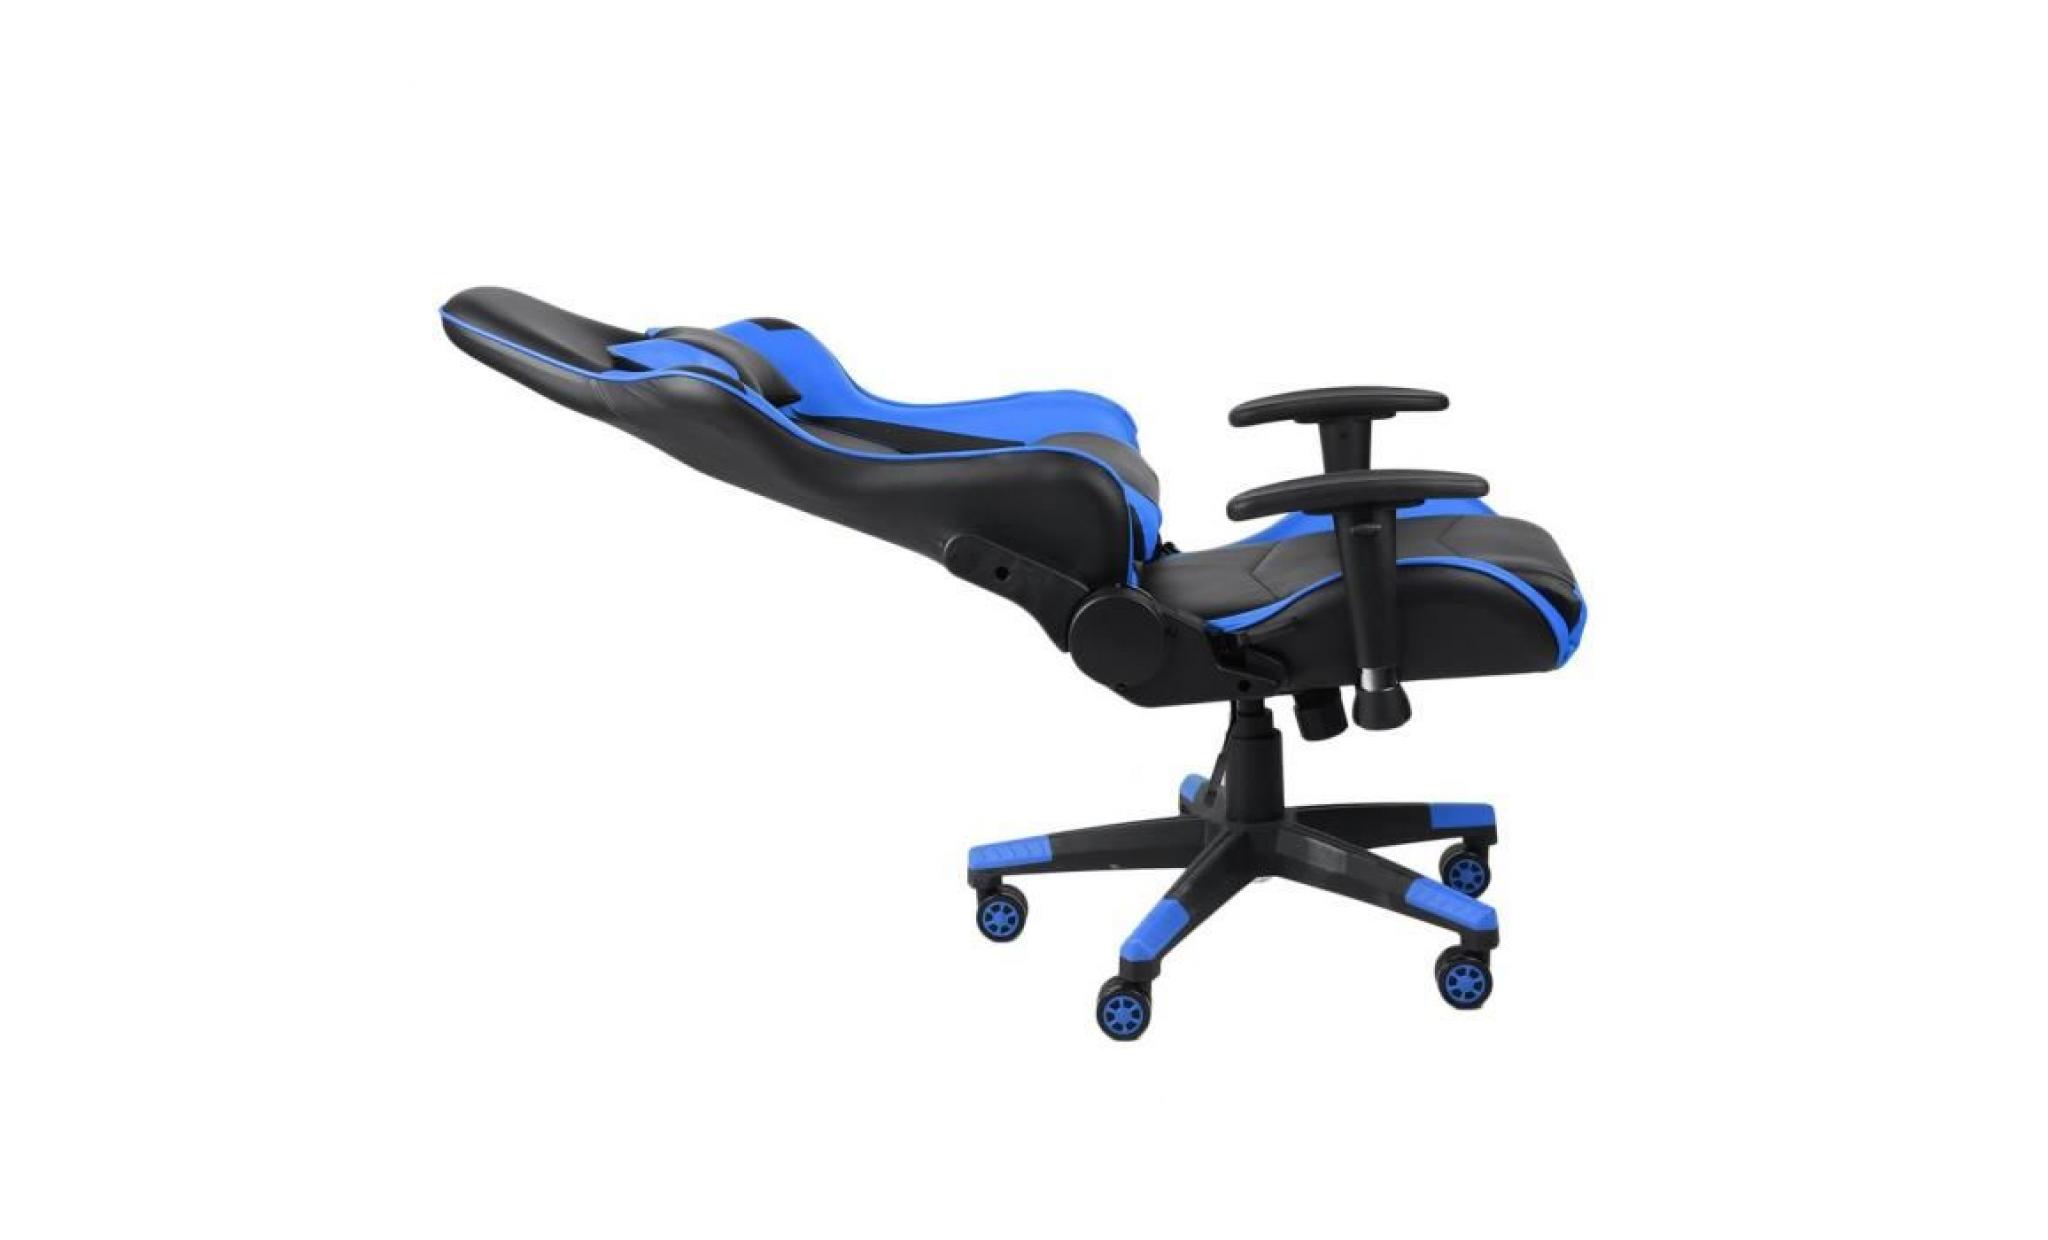 fauteuil gamer chaise de jeu fauteuil de bureau 127 137 cm hauteur avec appui tête et support lombaire bleu pas cher